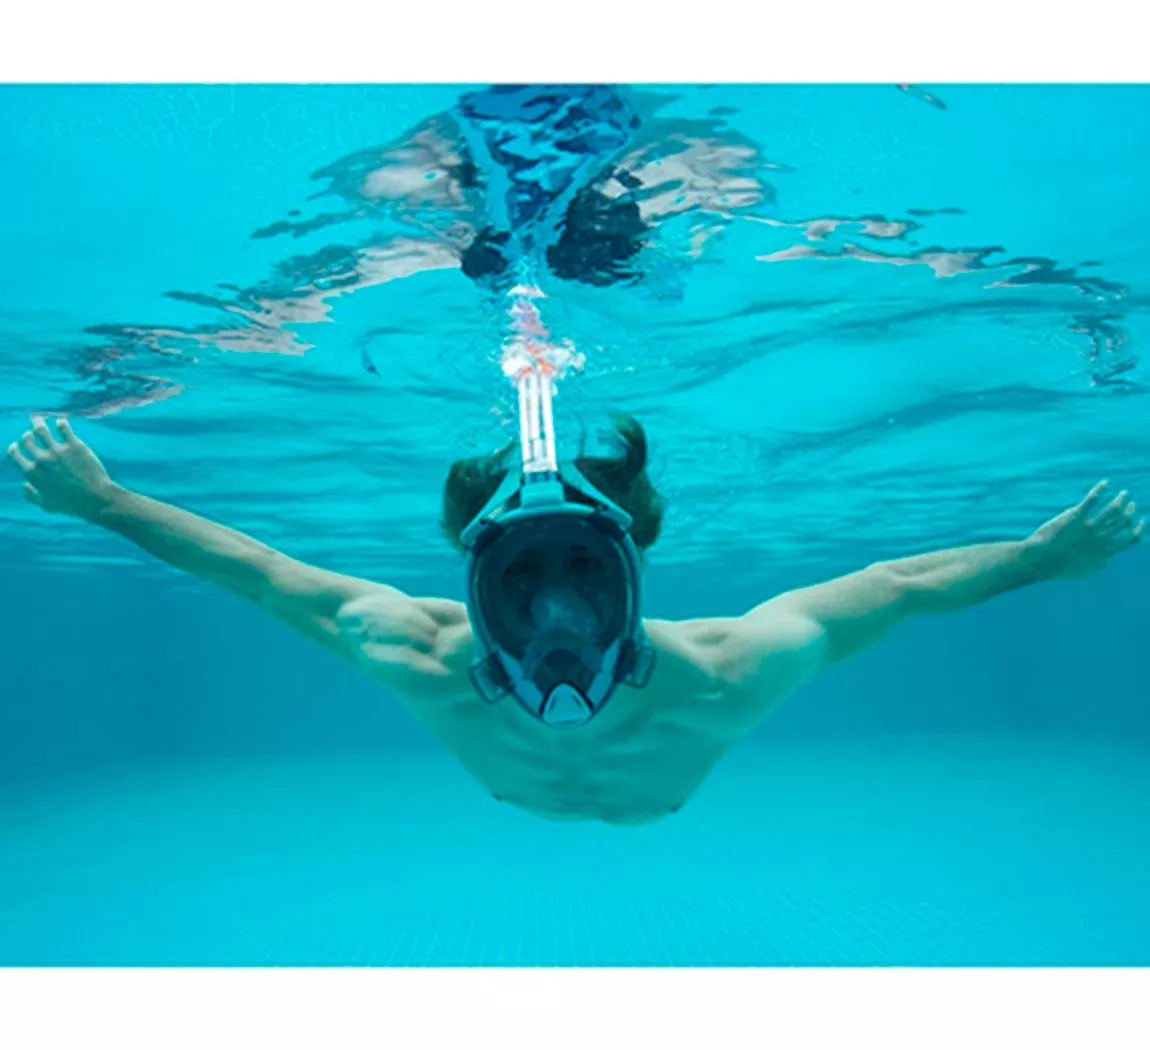 Bestway Mascara Para Snorkel Cara Completa Visión De 180